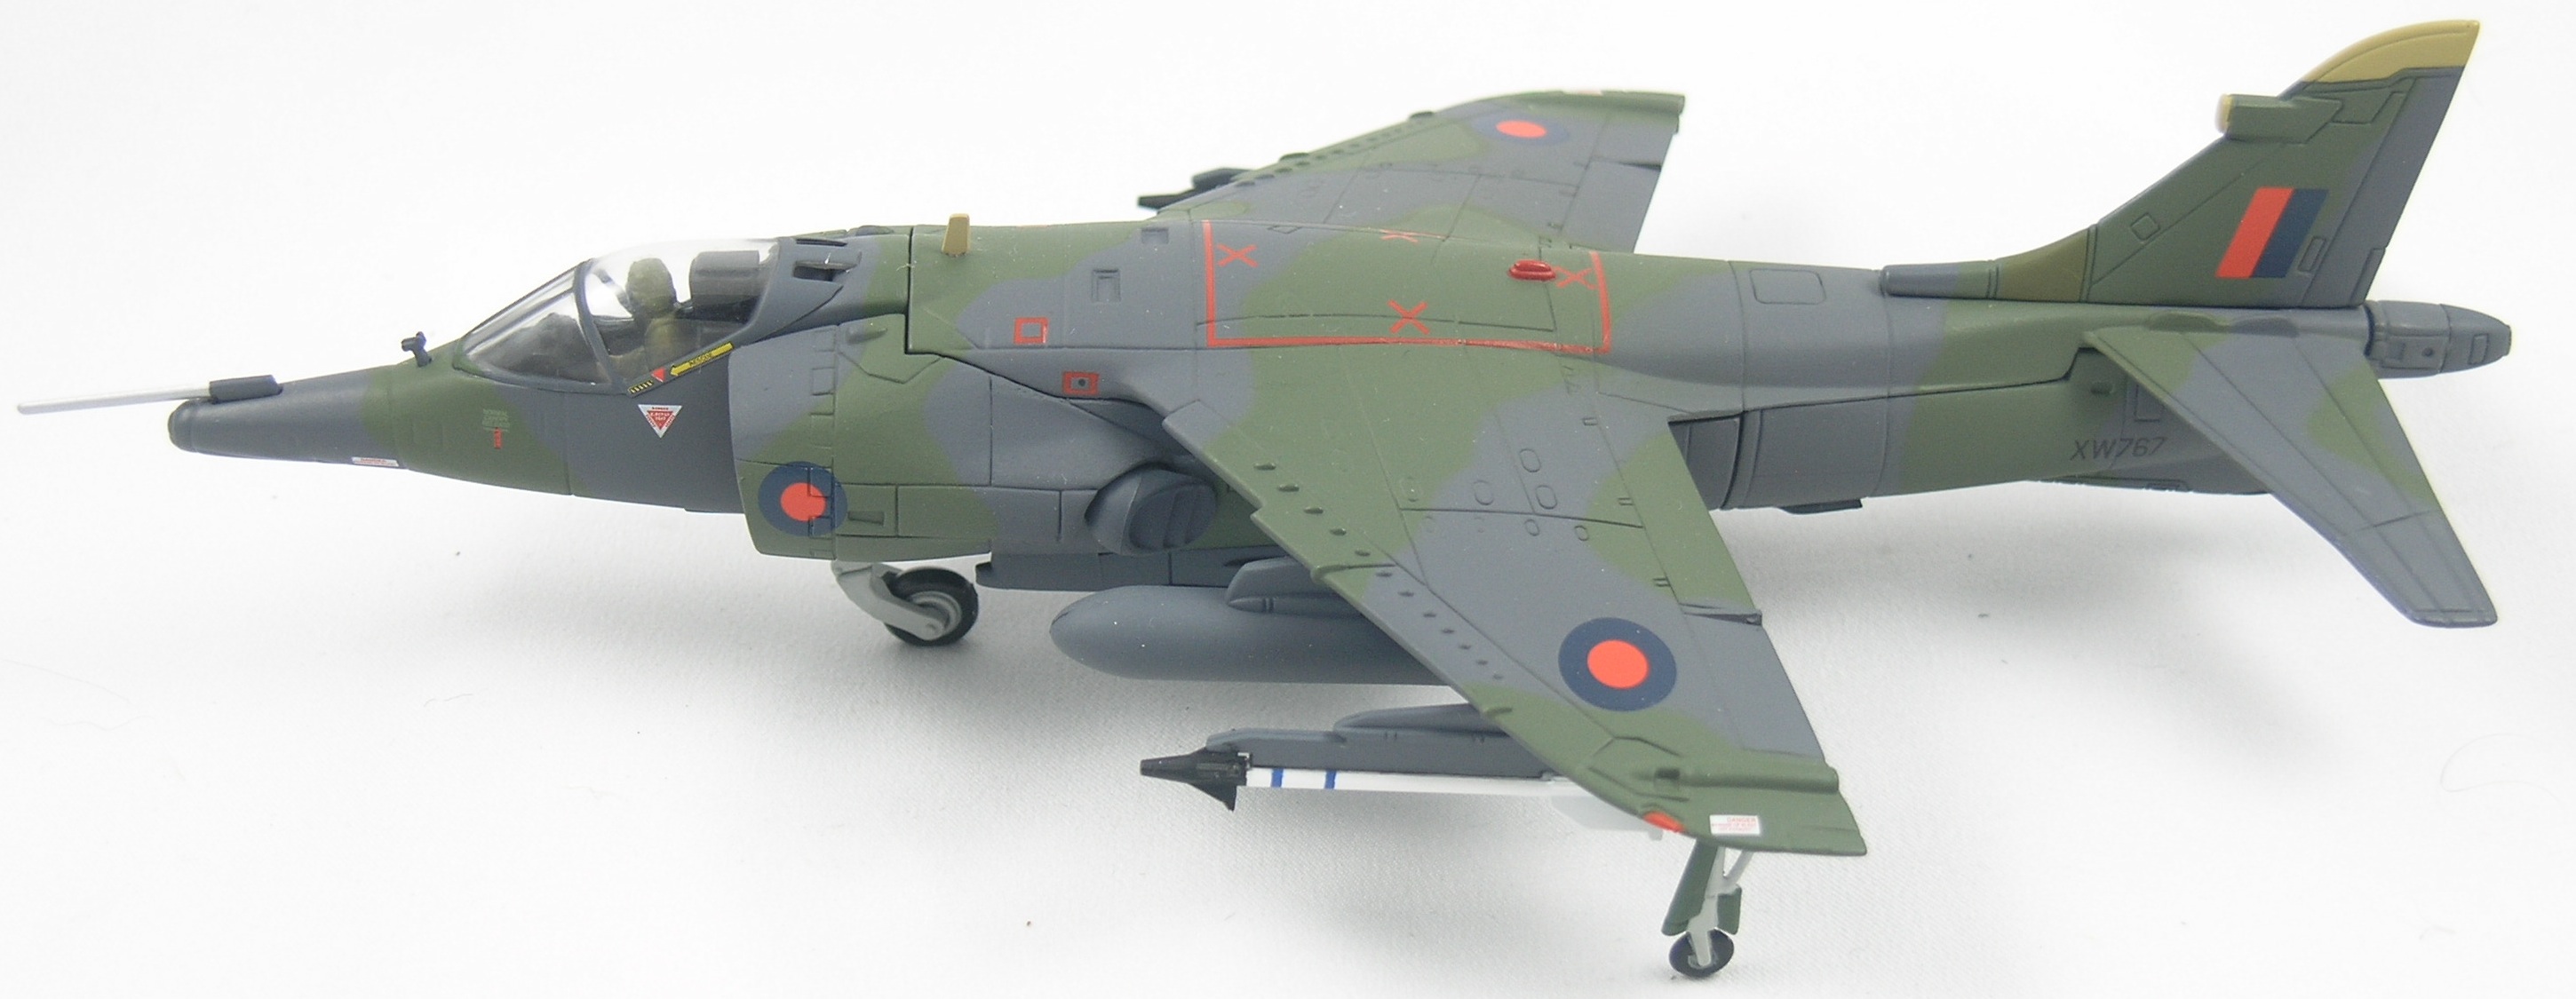 Harrier-AA39901-Top